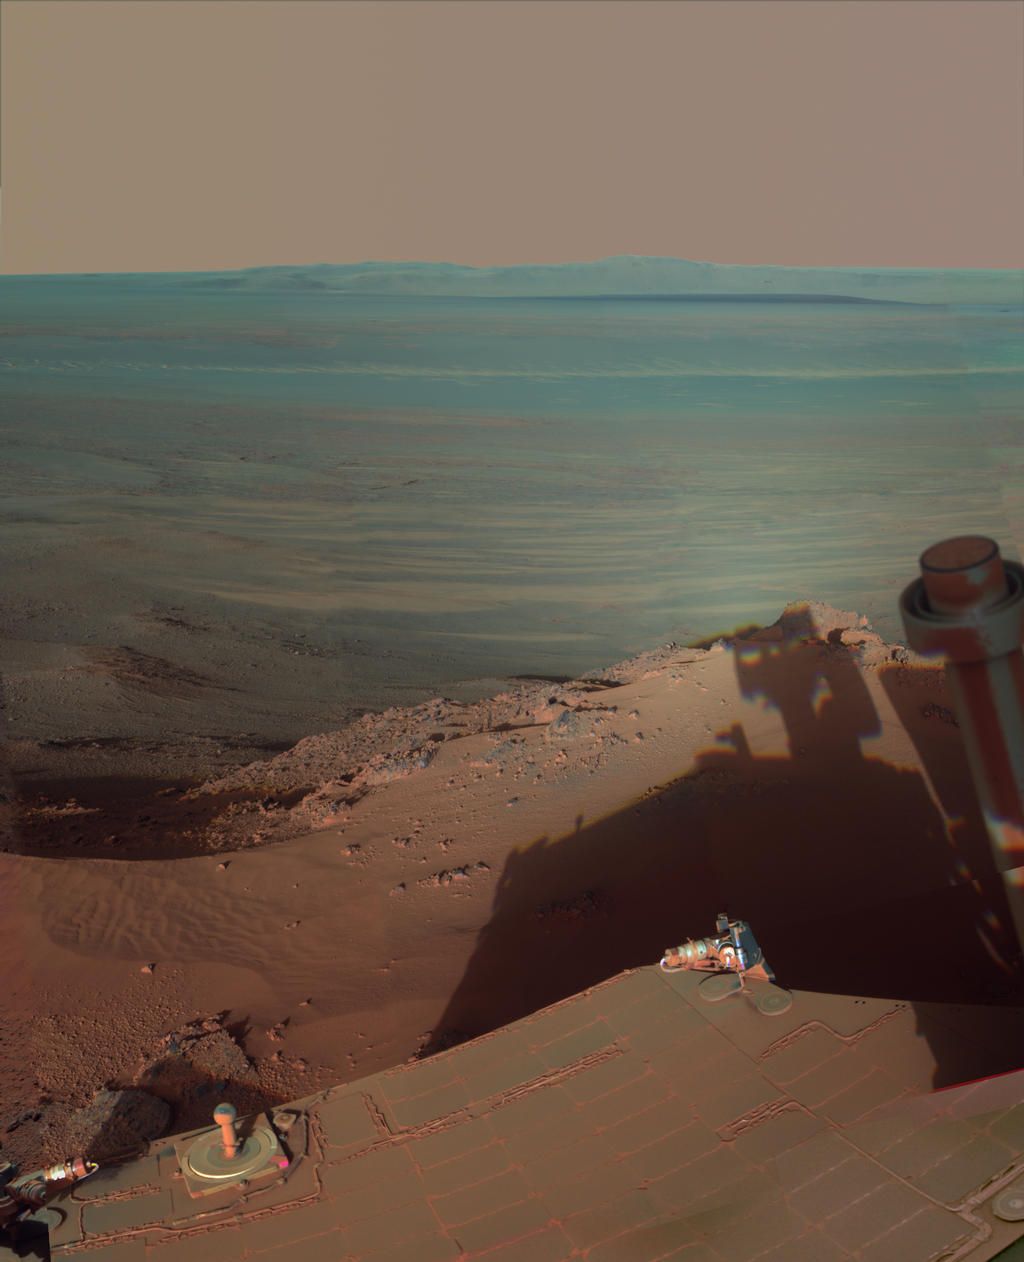 Best Picture of Mars. Popular Sciencepopsci.com